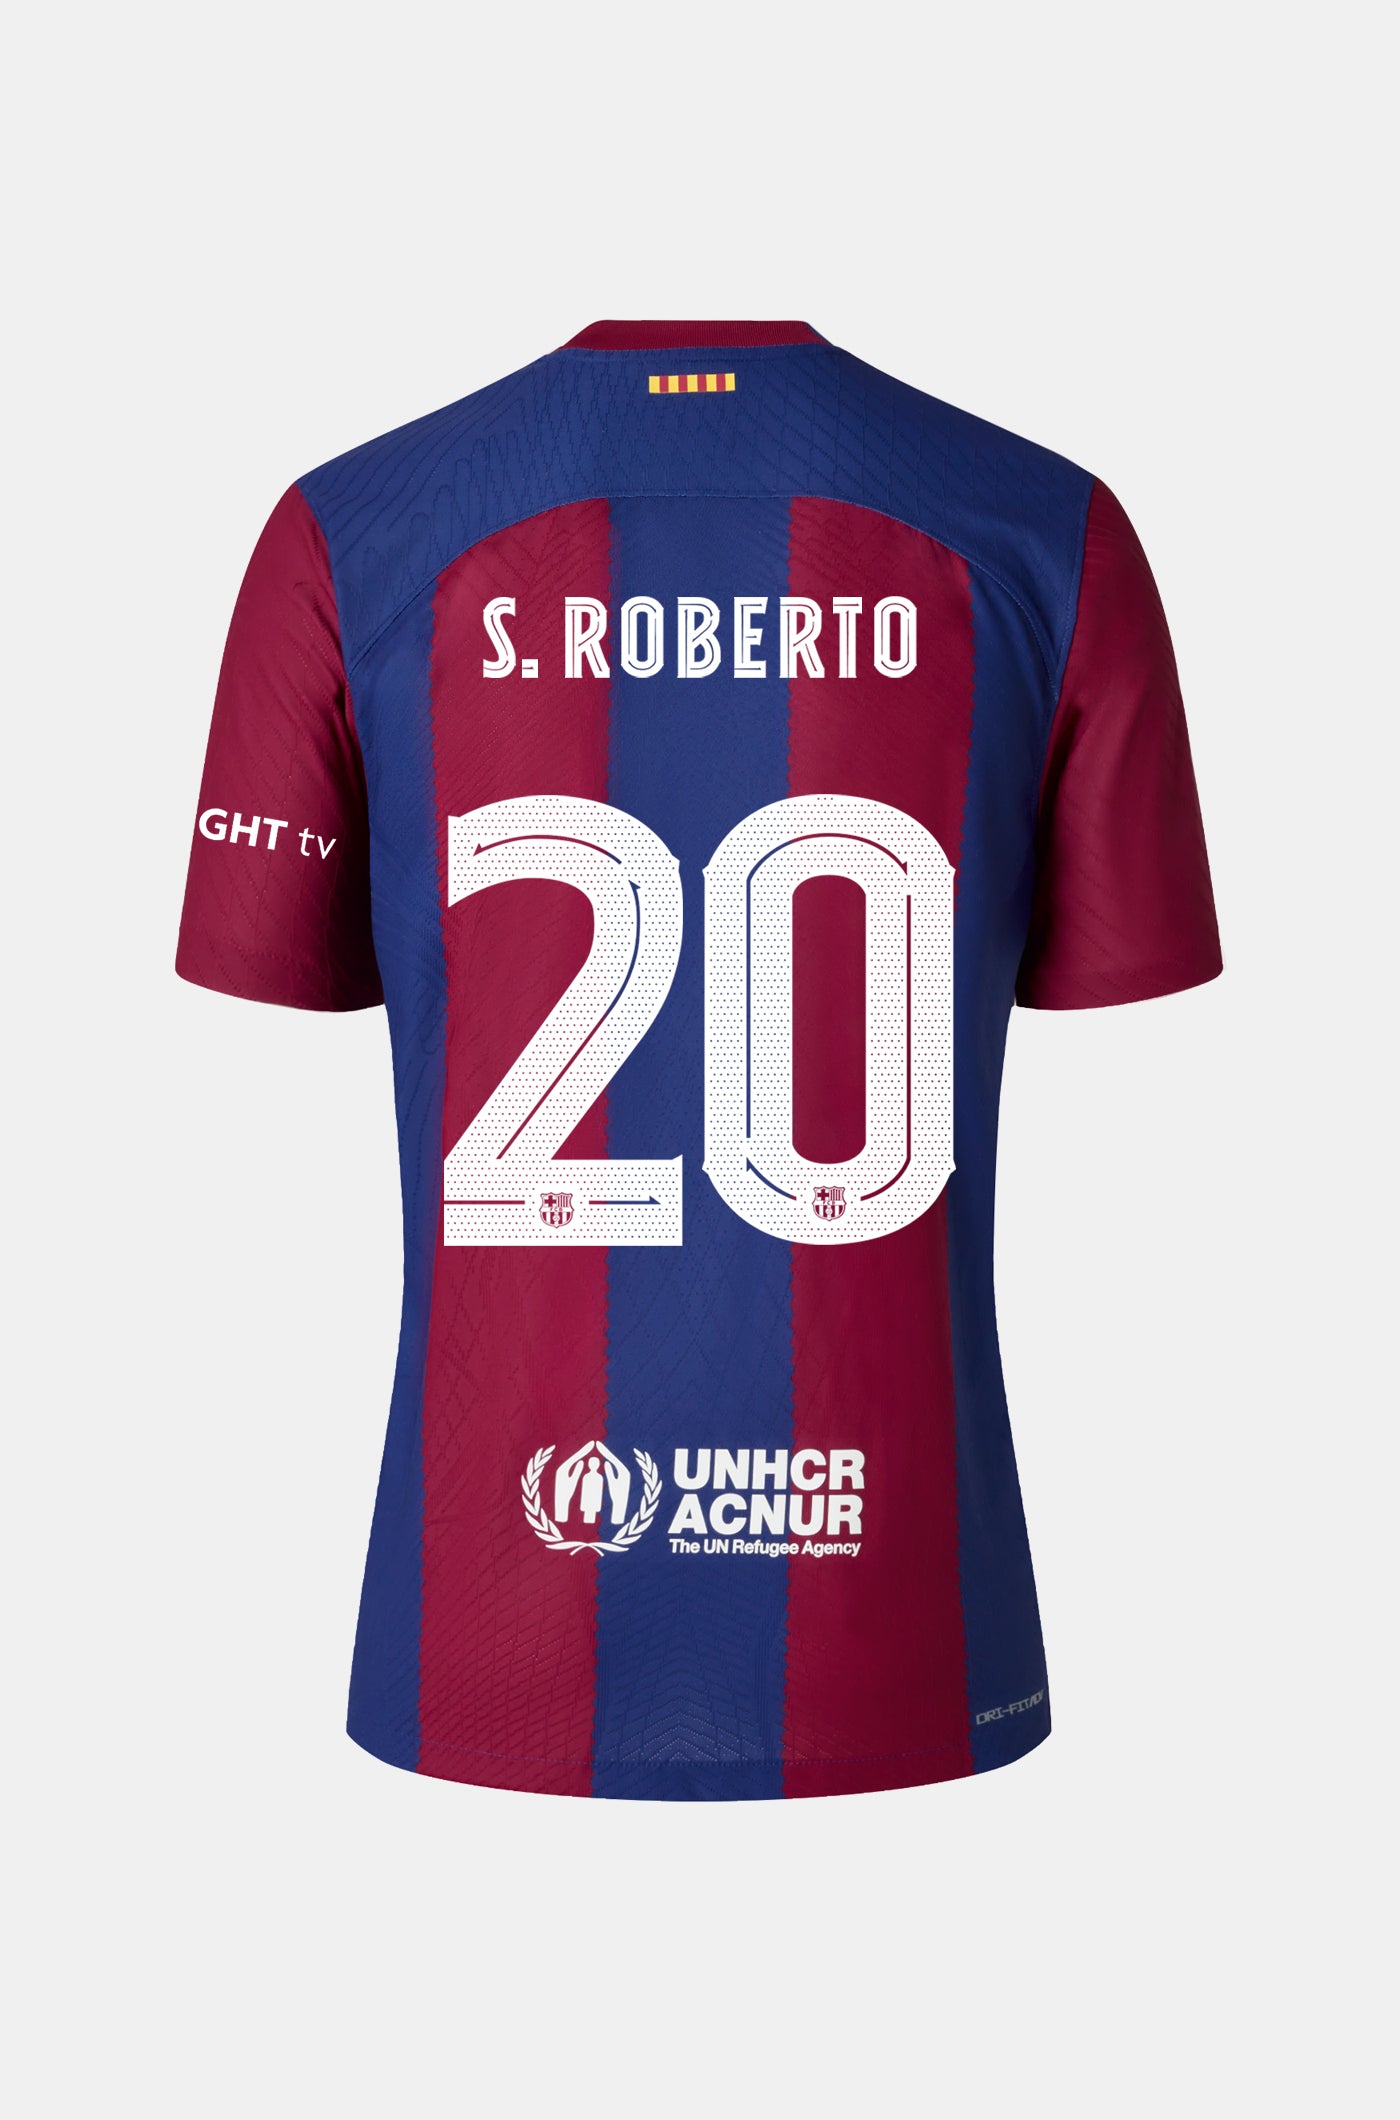 FC Barcelona home shirt 23/24 - Long-sleeve Player's Edition - S. ROBERTO